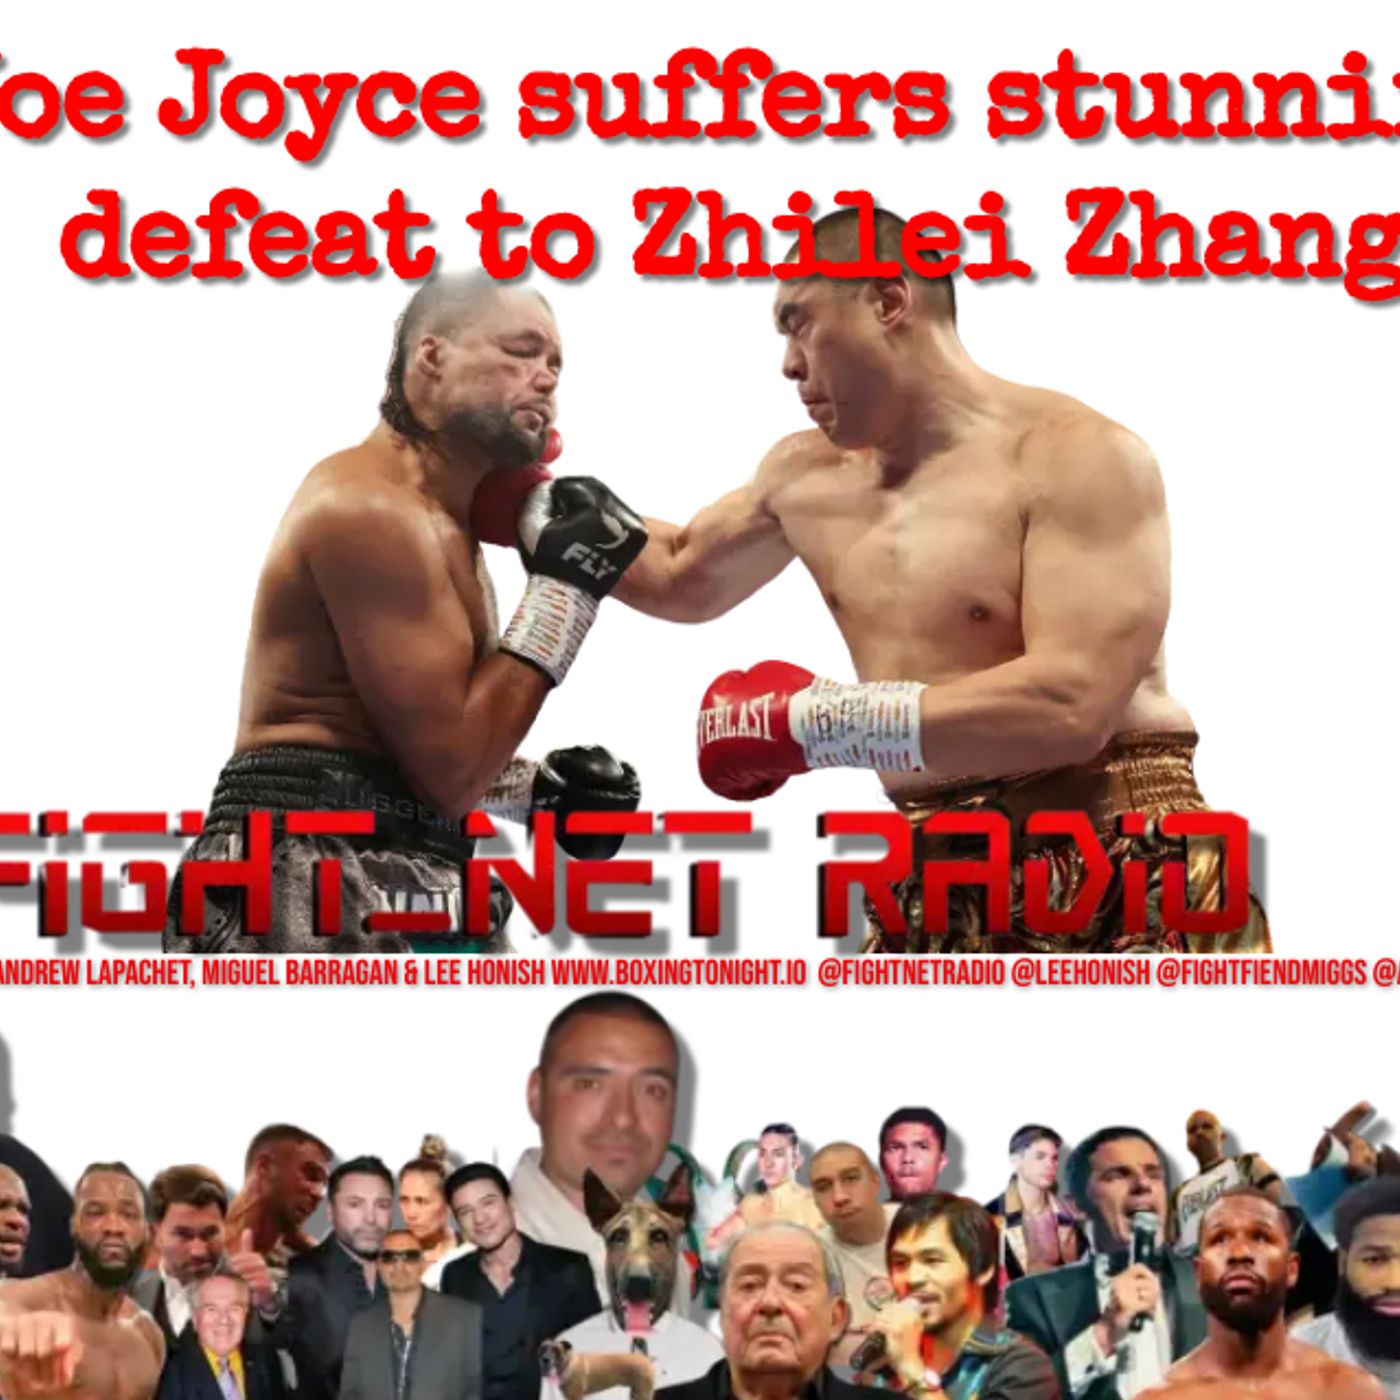 Joe Joyce suffers stunning defeat to Zhilei Zhang